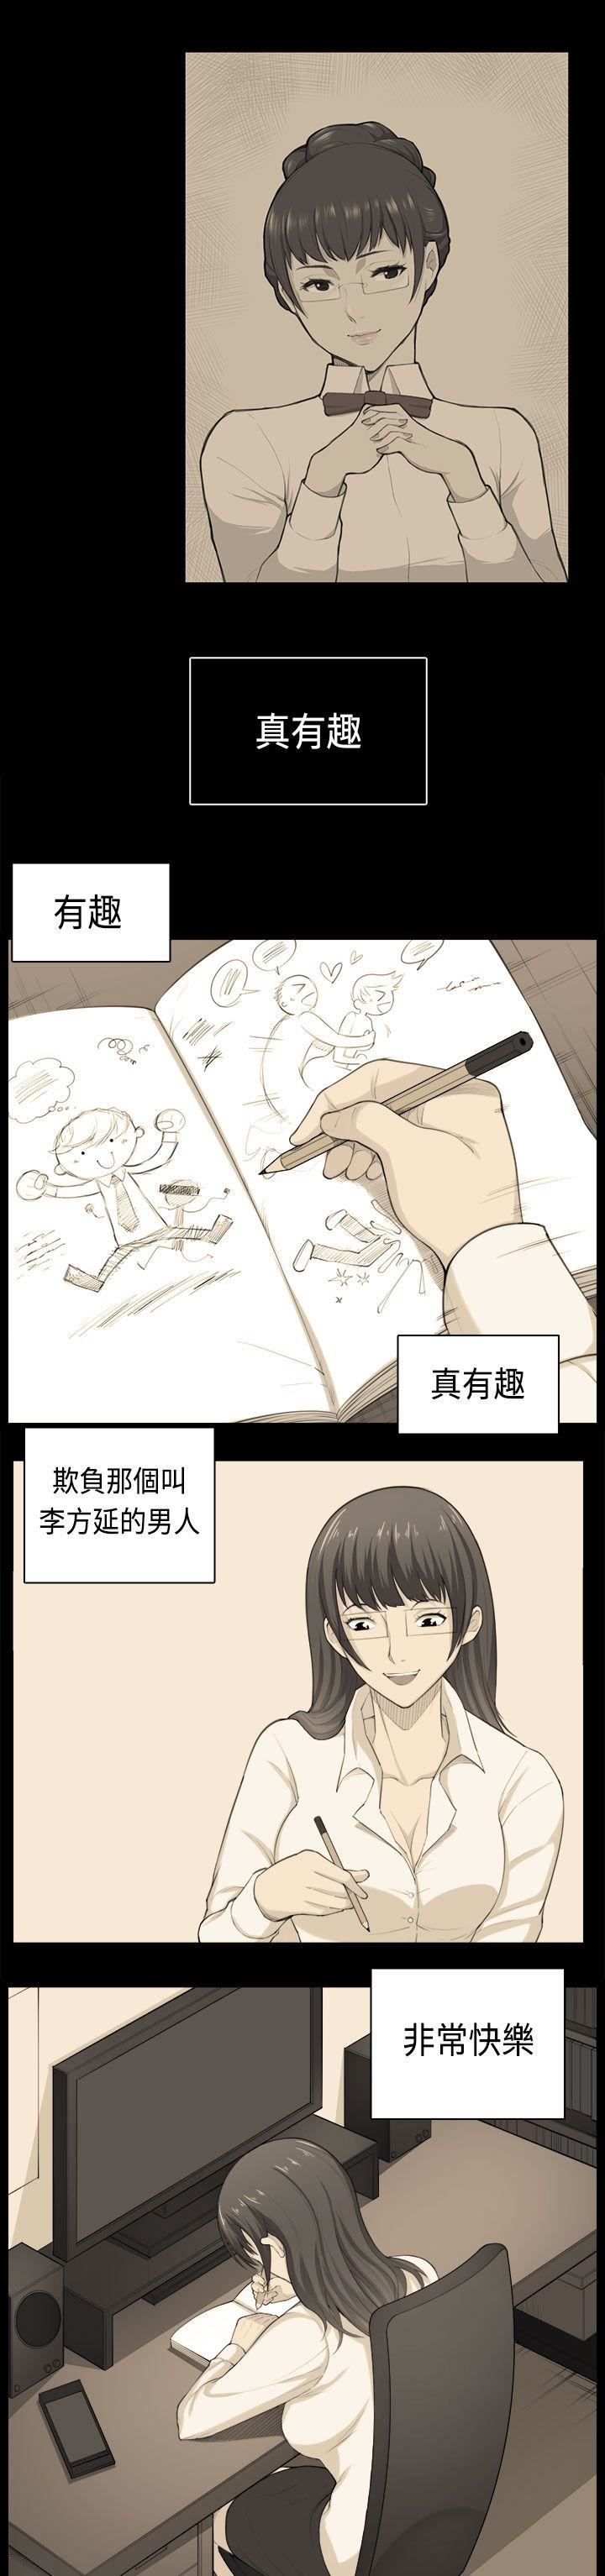 韩国污漫画 斯德哥爾摩癥候群 第38话 9